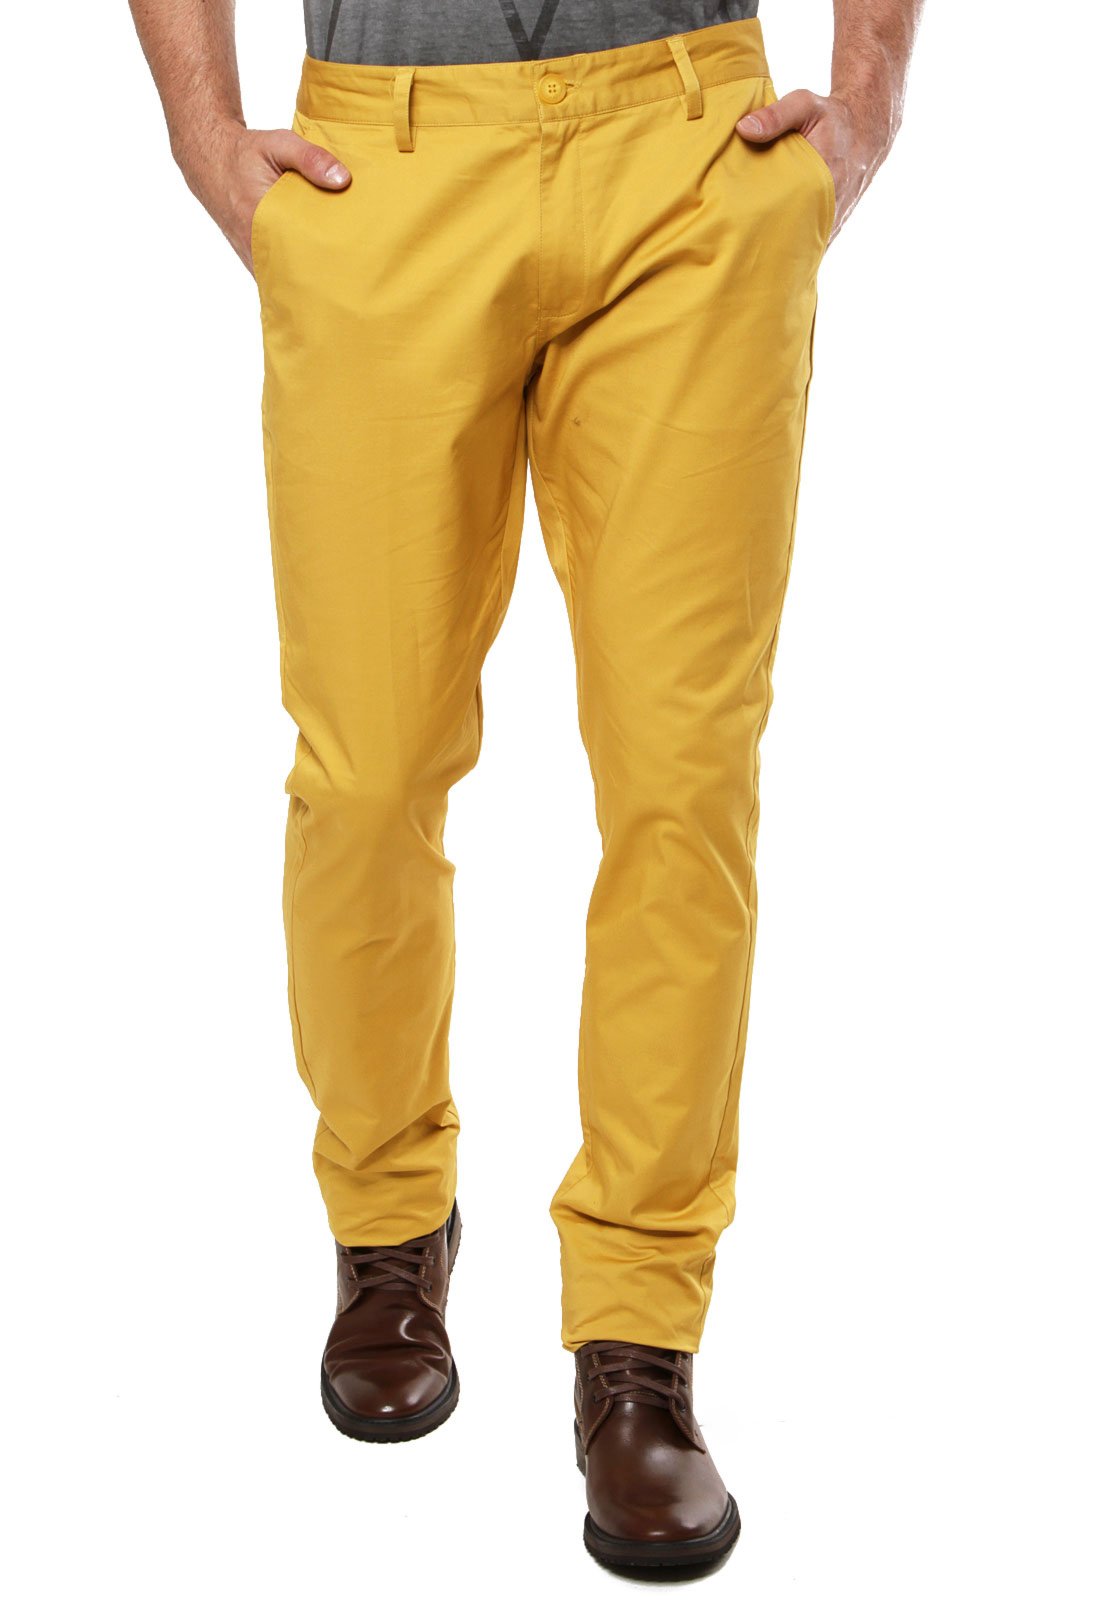 calça amarela masculina